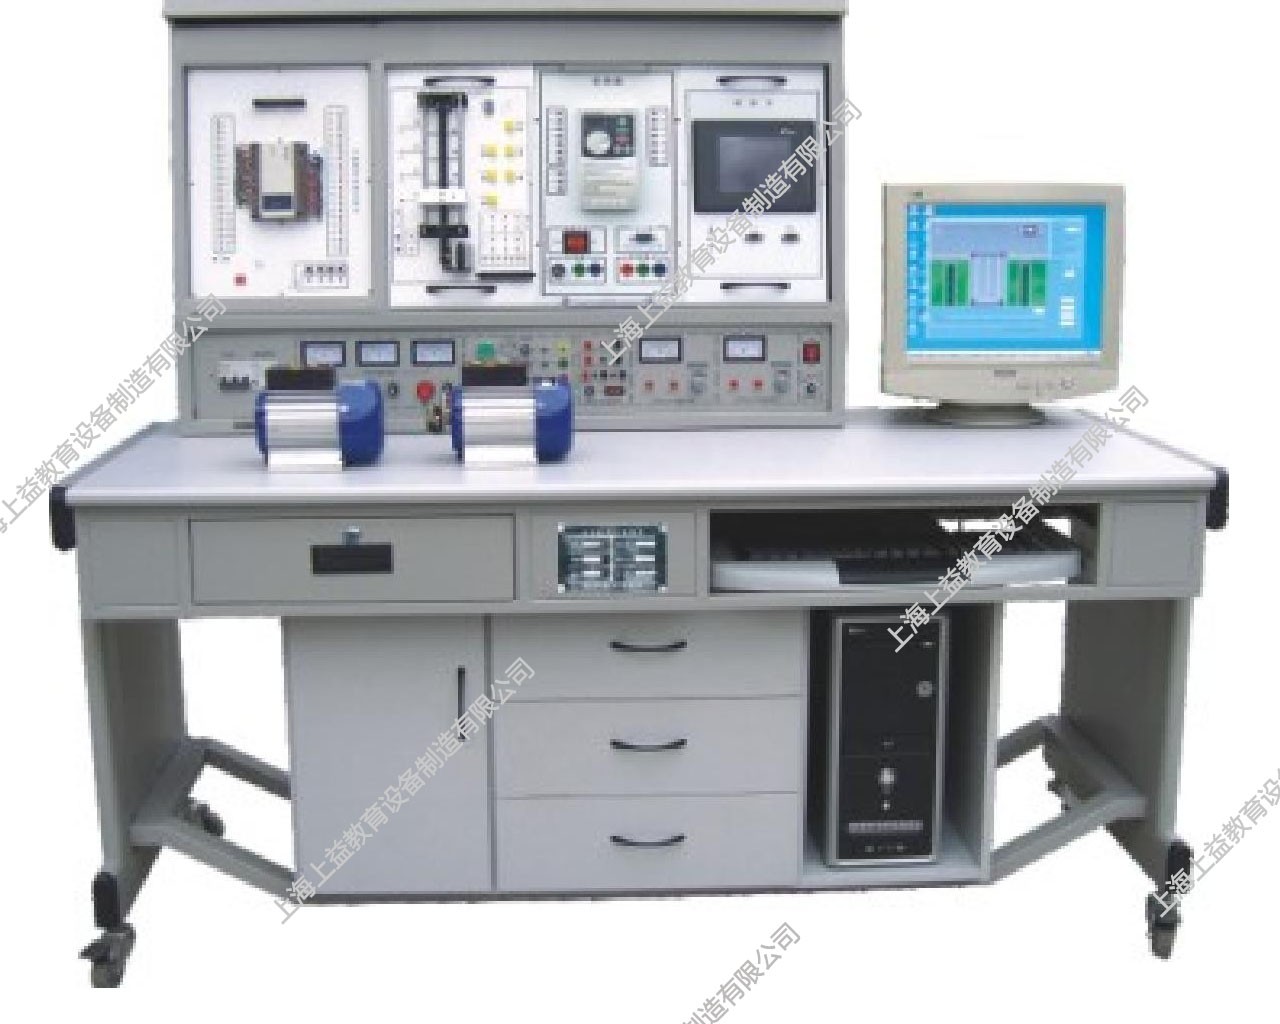 SYPLC-04A 網絡型PLC可編程控制器、變頻調速及電氣控制實驗裝置（PLC、變頻器、觸摸屏、電氣控制）